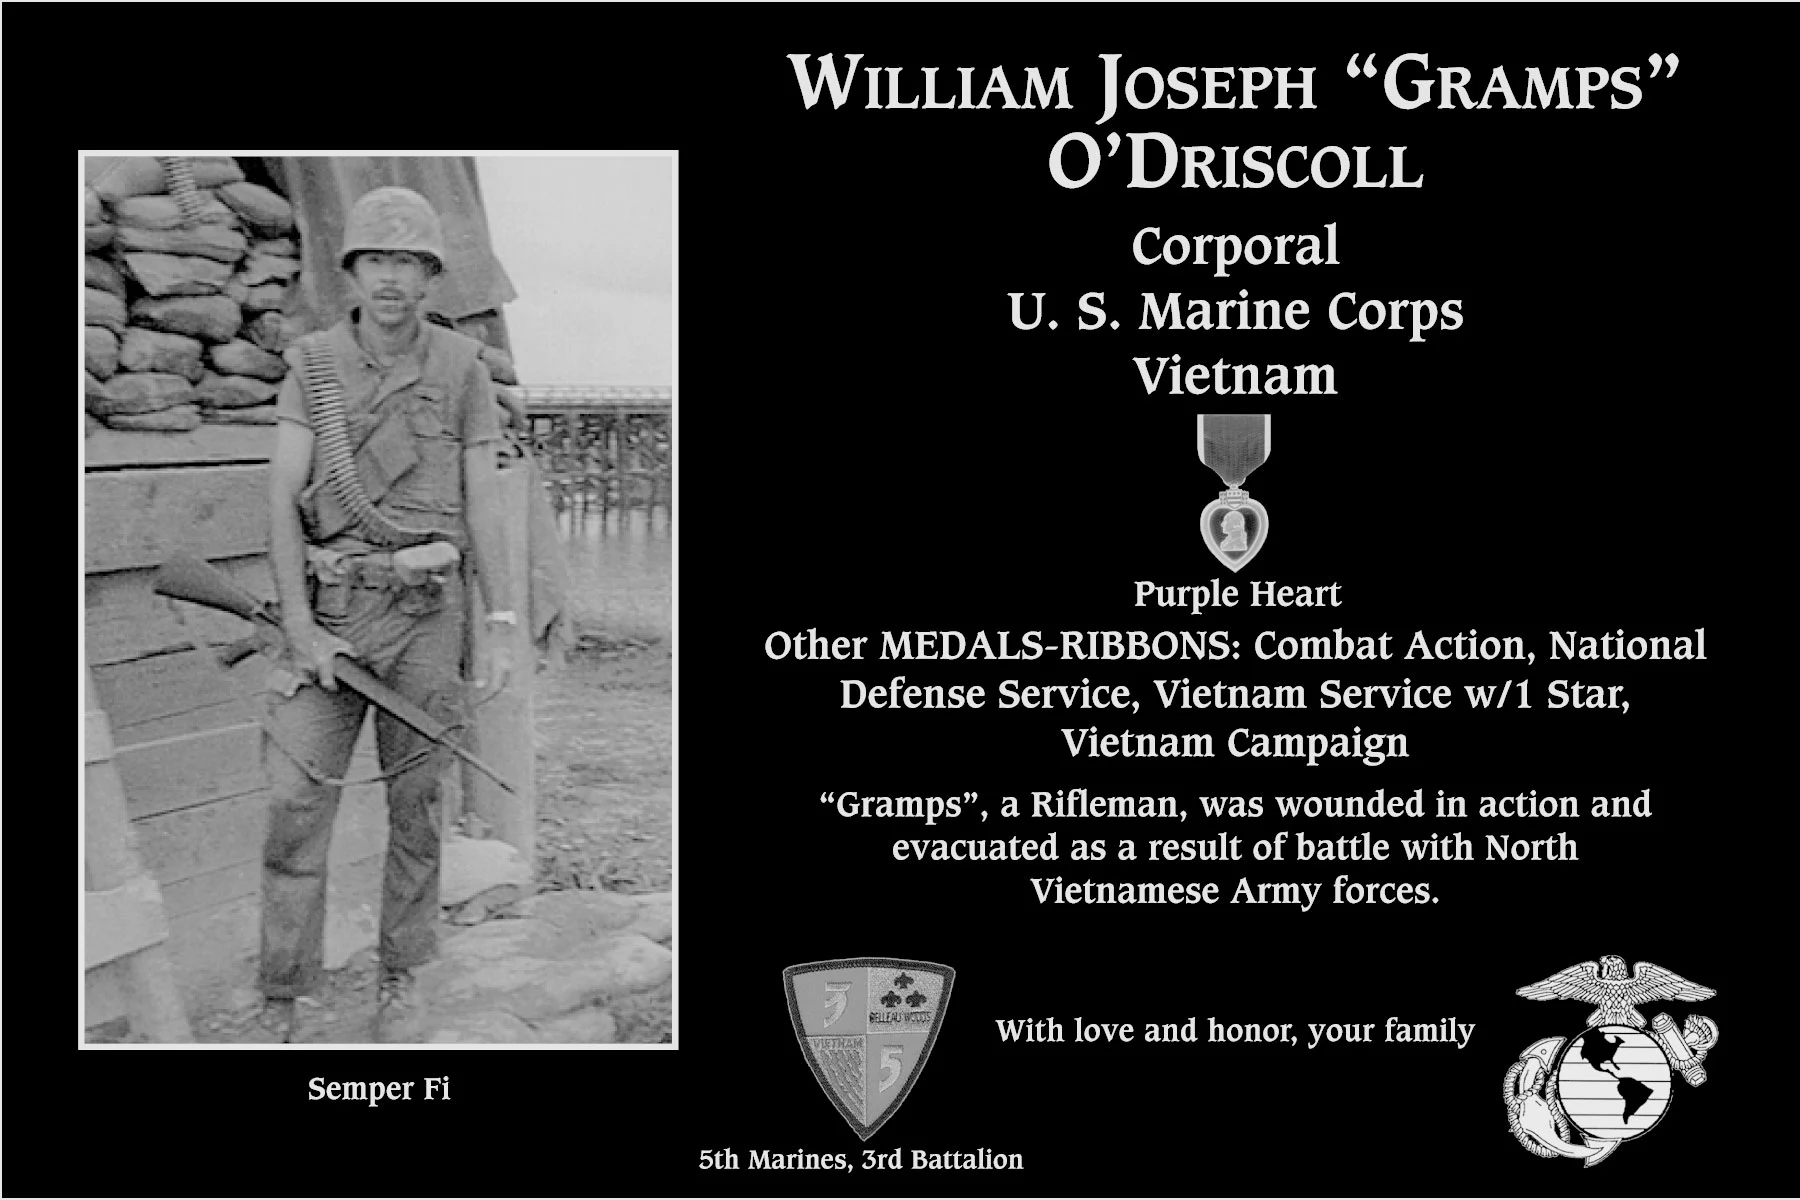 William Joseph “Gramps” O'Driscoll